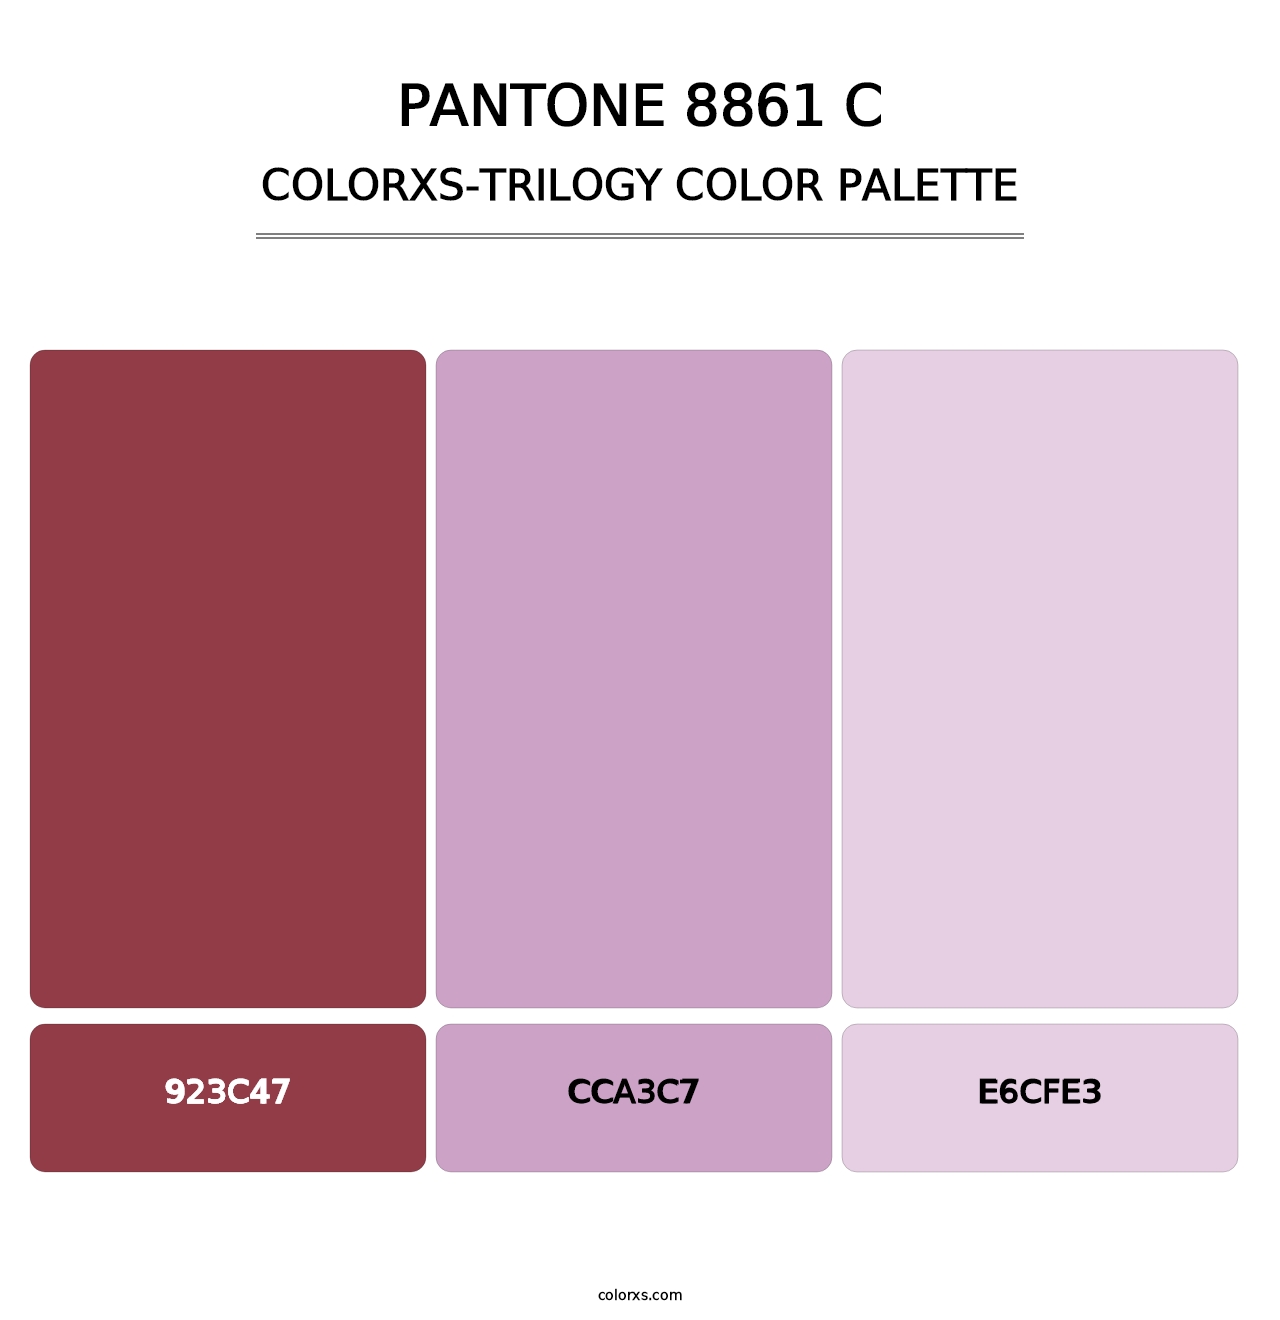 PANTONE 8861 C - Colorxs Trilogy Palette